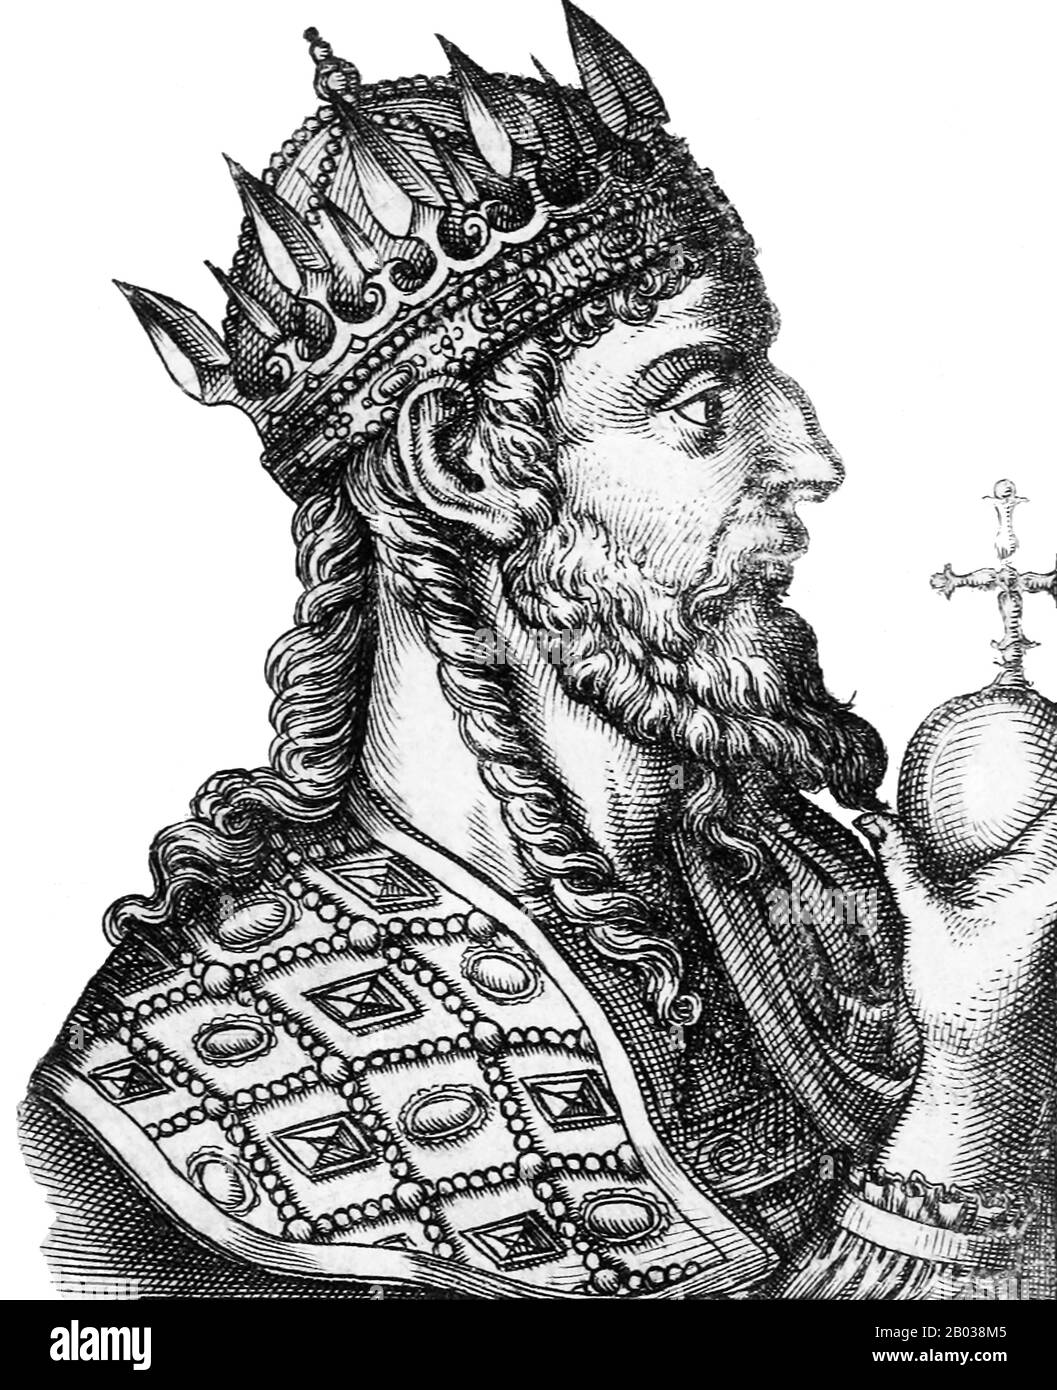 Tiberio II Constantino (520-582) nació en Tracia y amigo cercano del futuro emperador Justin II Tiberio se convirtió en comandante de la guardia imperial de los Excubitos, y cuando Justin II se adhirió al emperador, Tiberio se convirtió en su comandante militar principal. Cuando Justin tuvo un colapso mental, su esposa Sophia se volvió a Tiberio para manejar el imperio, y más tarde fue nombrado co-emperador y adoptado hijo por Justin en 574. Tiberio se convirtió en único emperador después de que Justin murió en 578, y casi tuvo que lidiar con un complot para derrocarlo perpetrado por la viuda de Justin, la emperatriz Sophia. La conspiración fracasó, y. Foto de stock